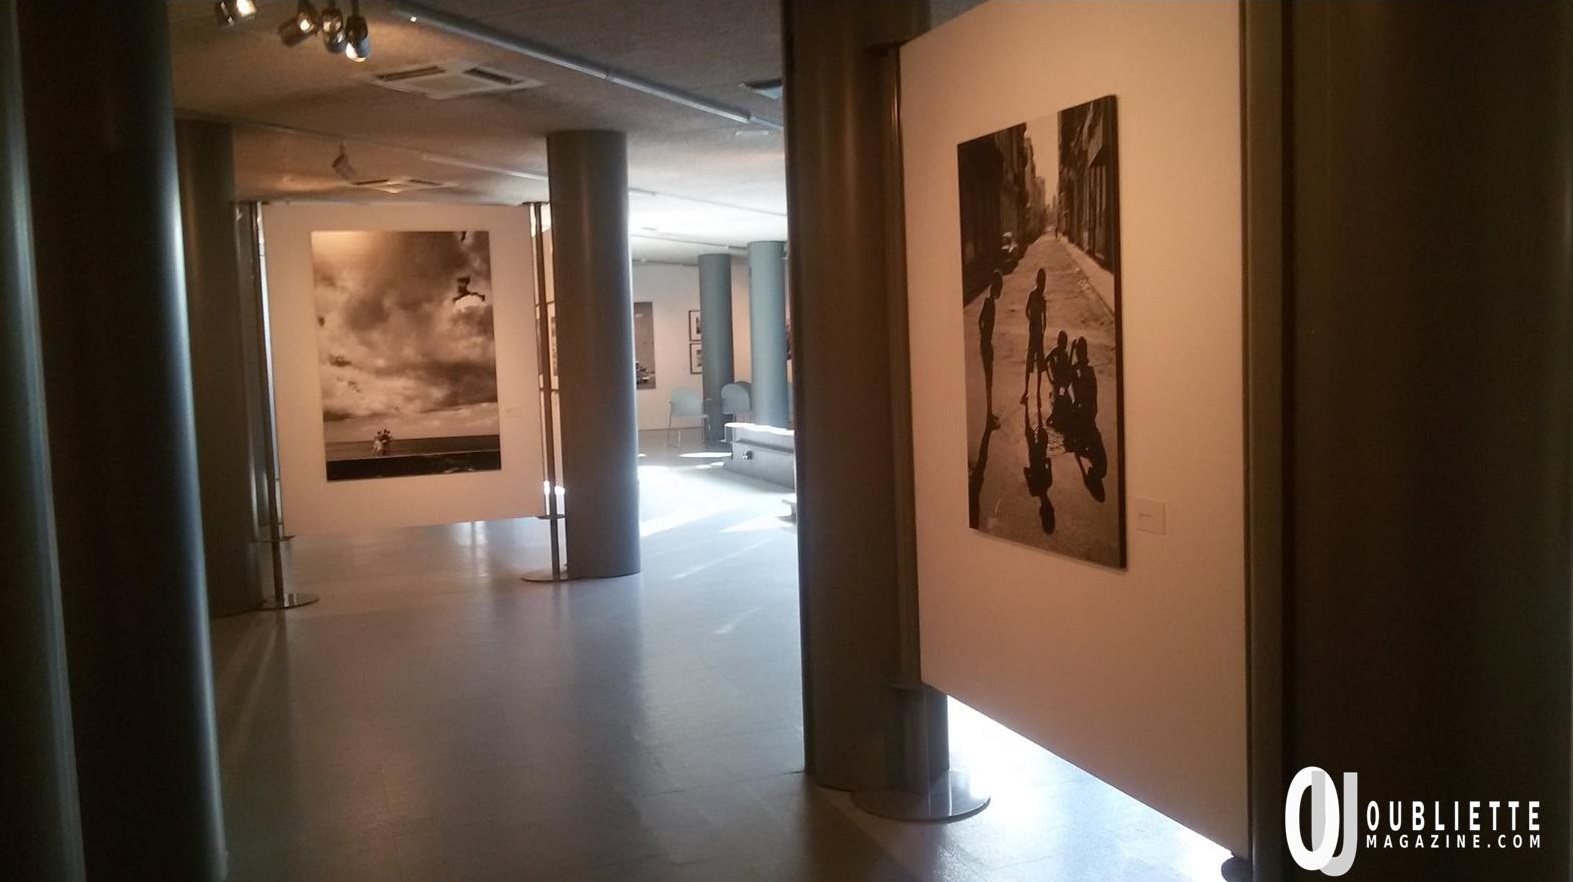 “La Habana, la perla e l’ombra”: la mostra fotografica di Claudio Mainardi, sino al 12 ottobre a Padova